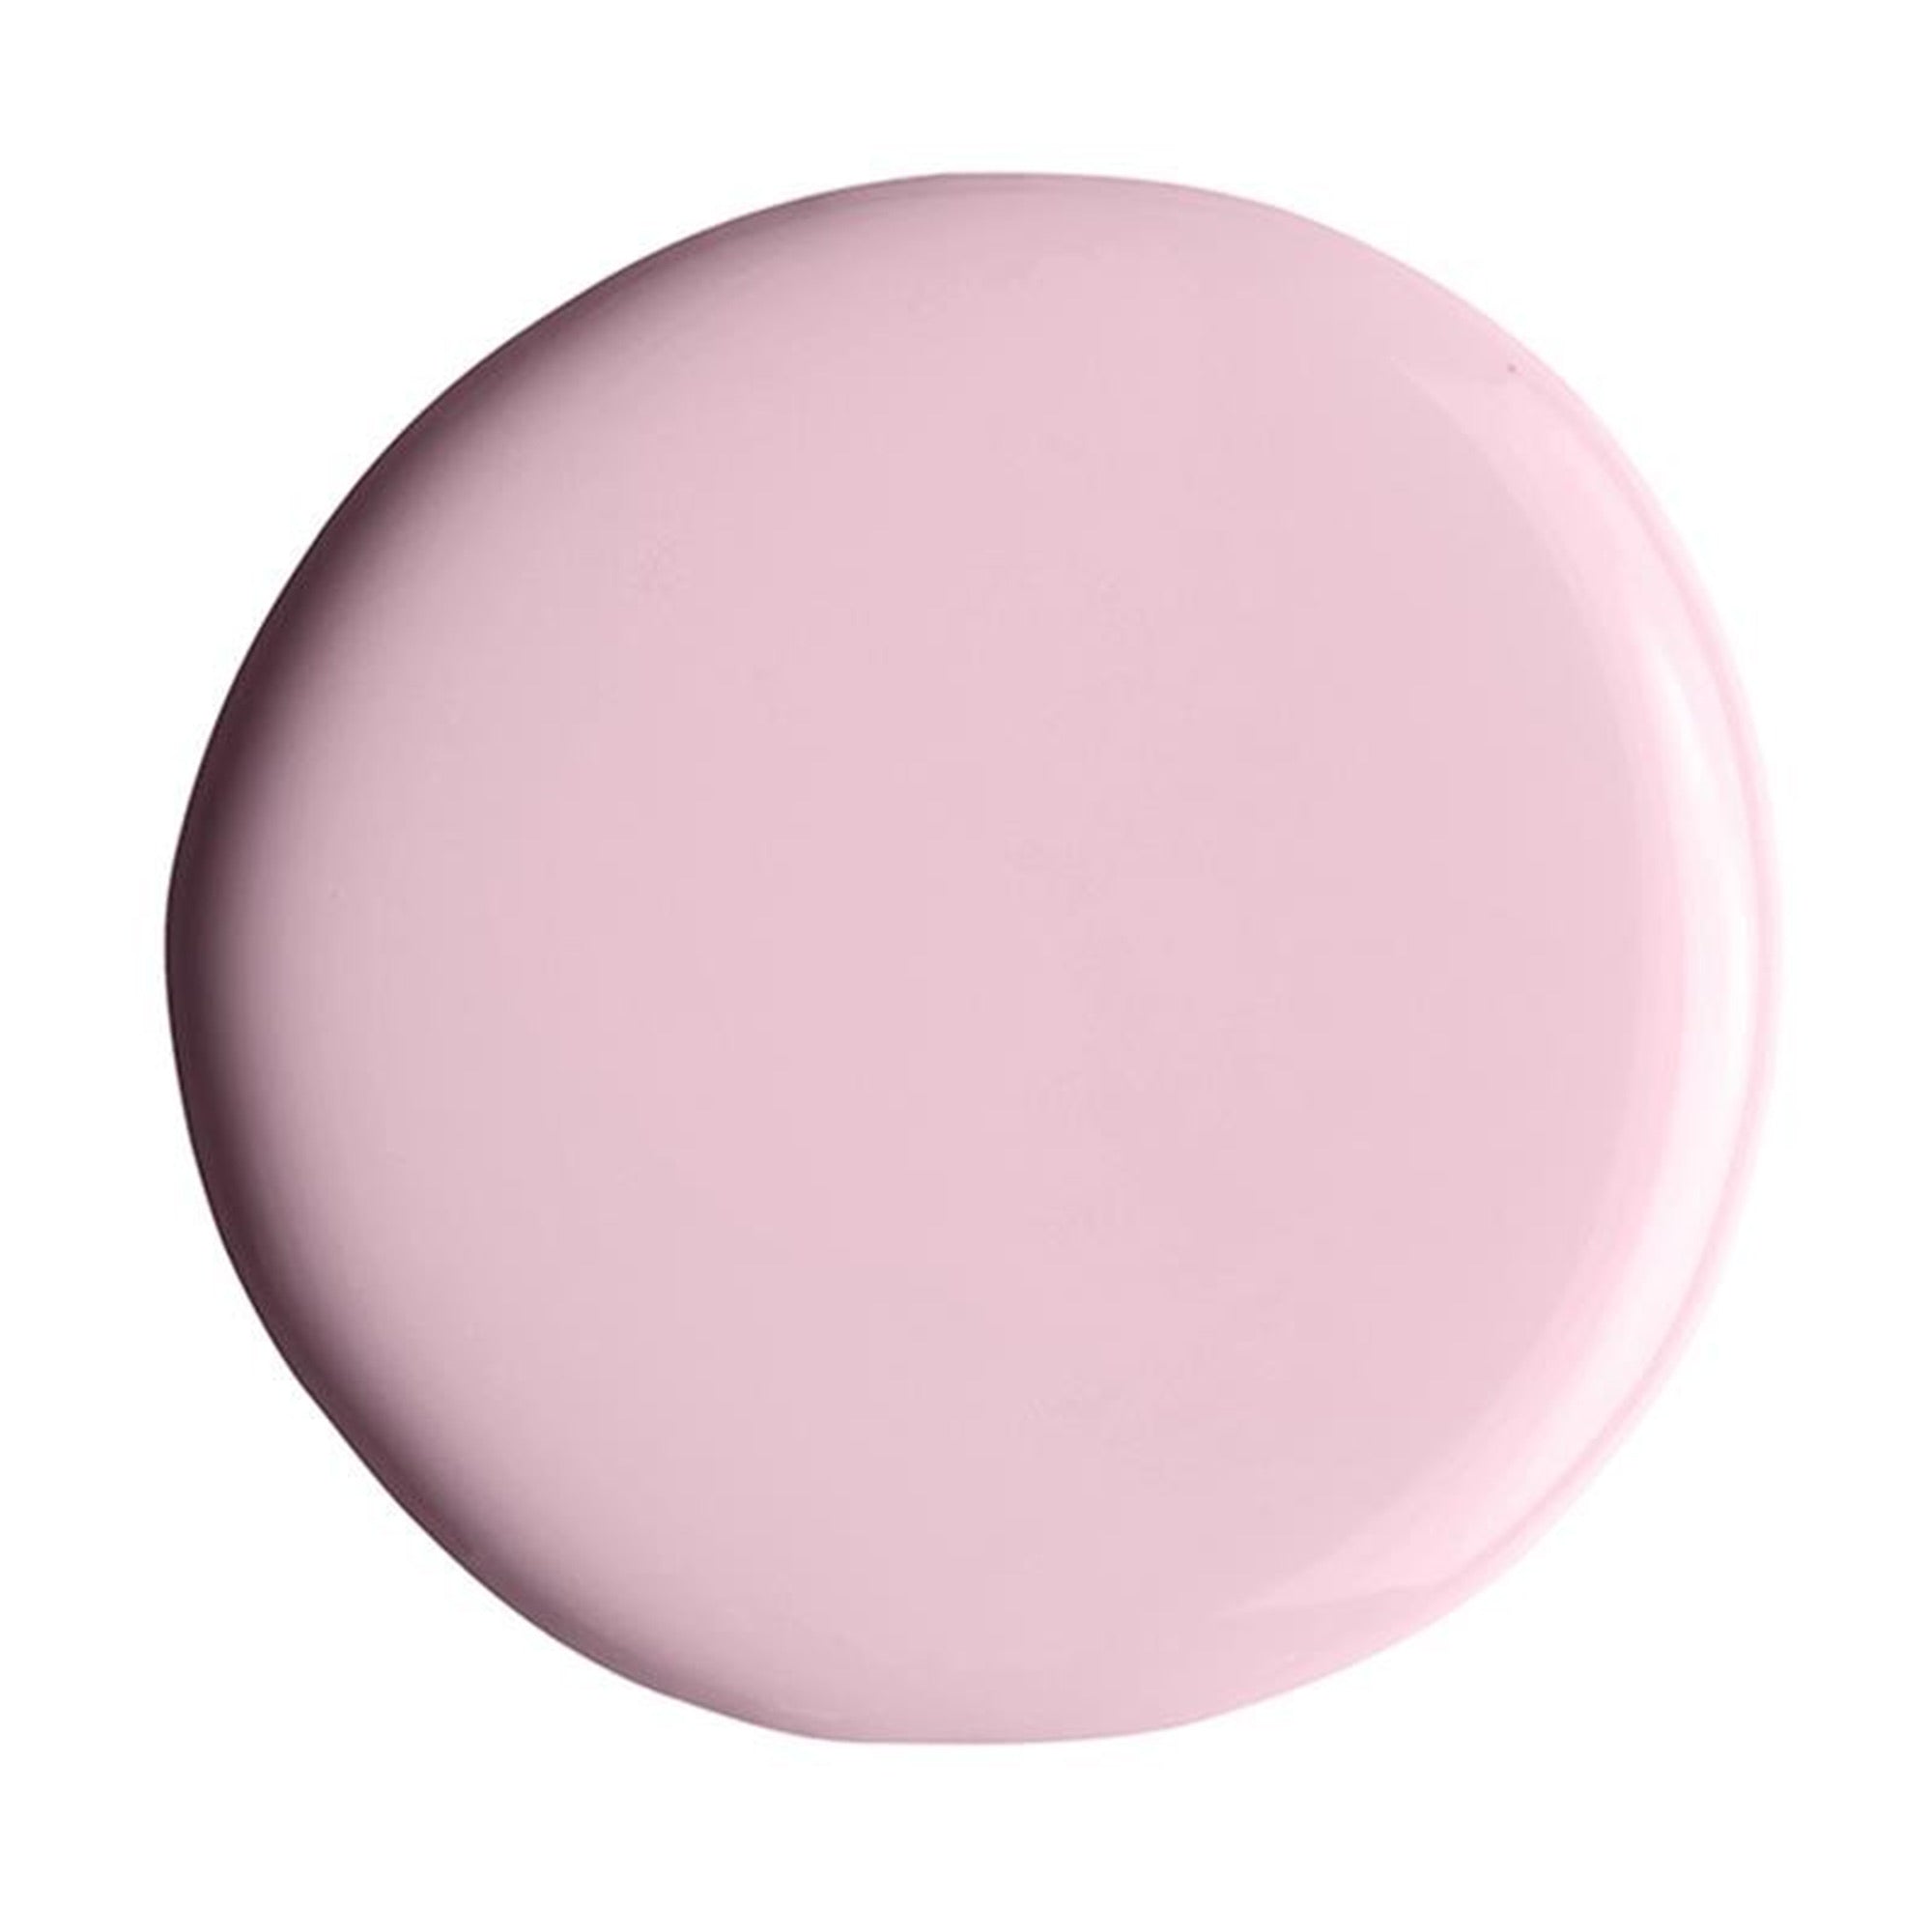 Alix Avien - Nail Polish No.59 (Pink Candy)